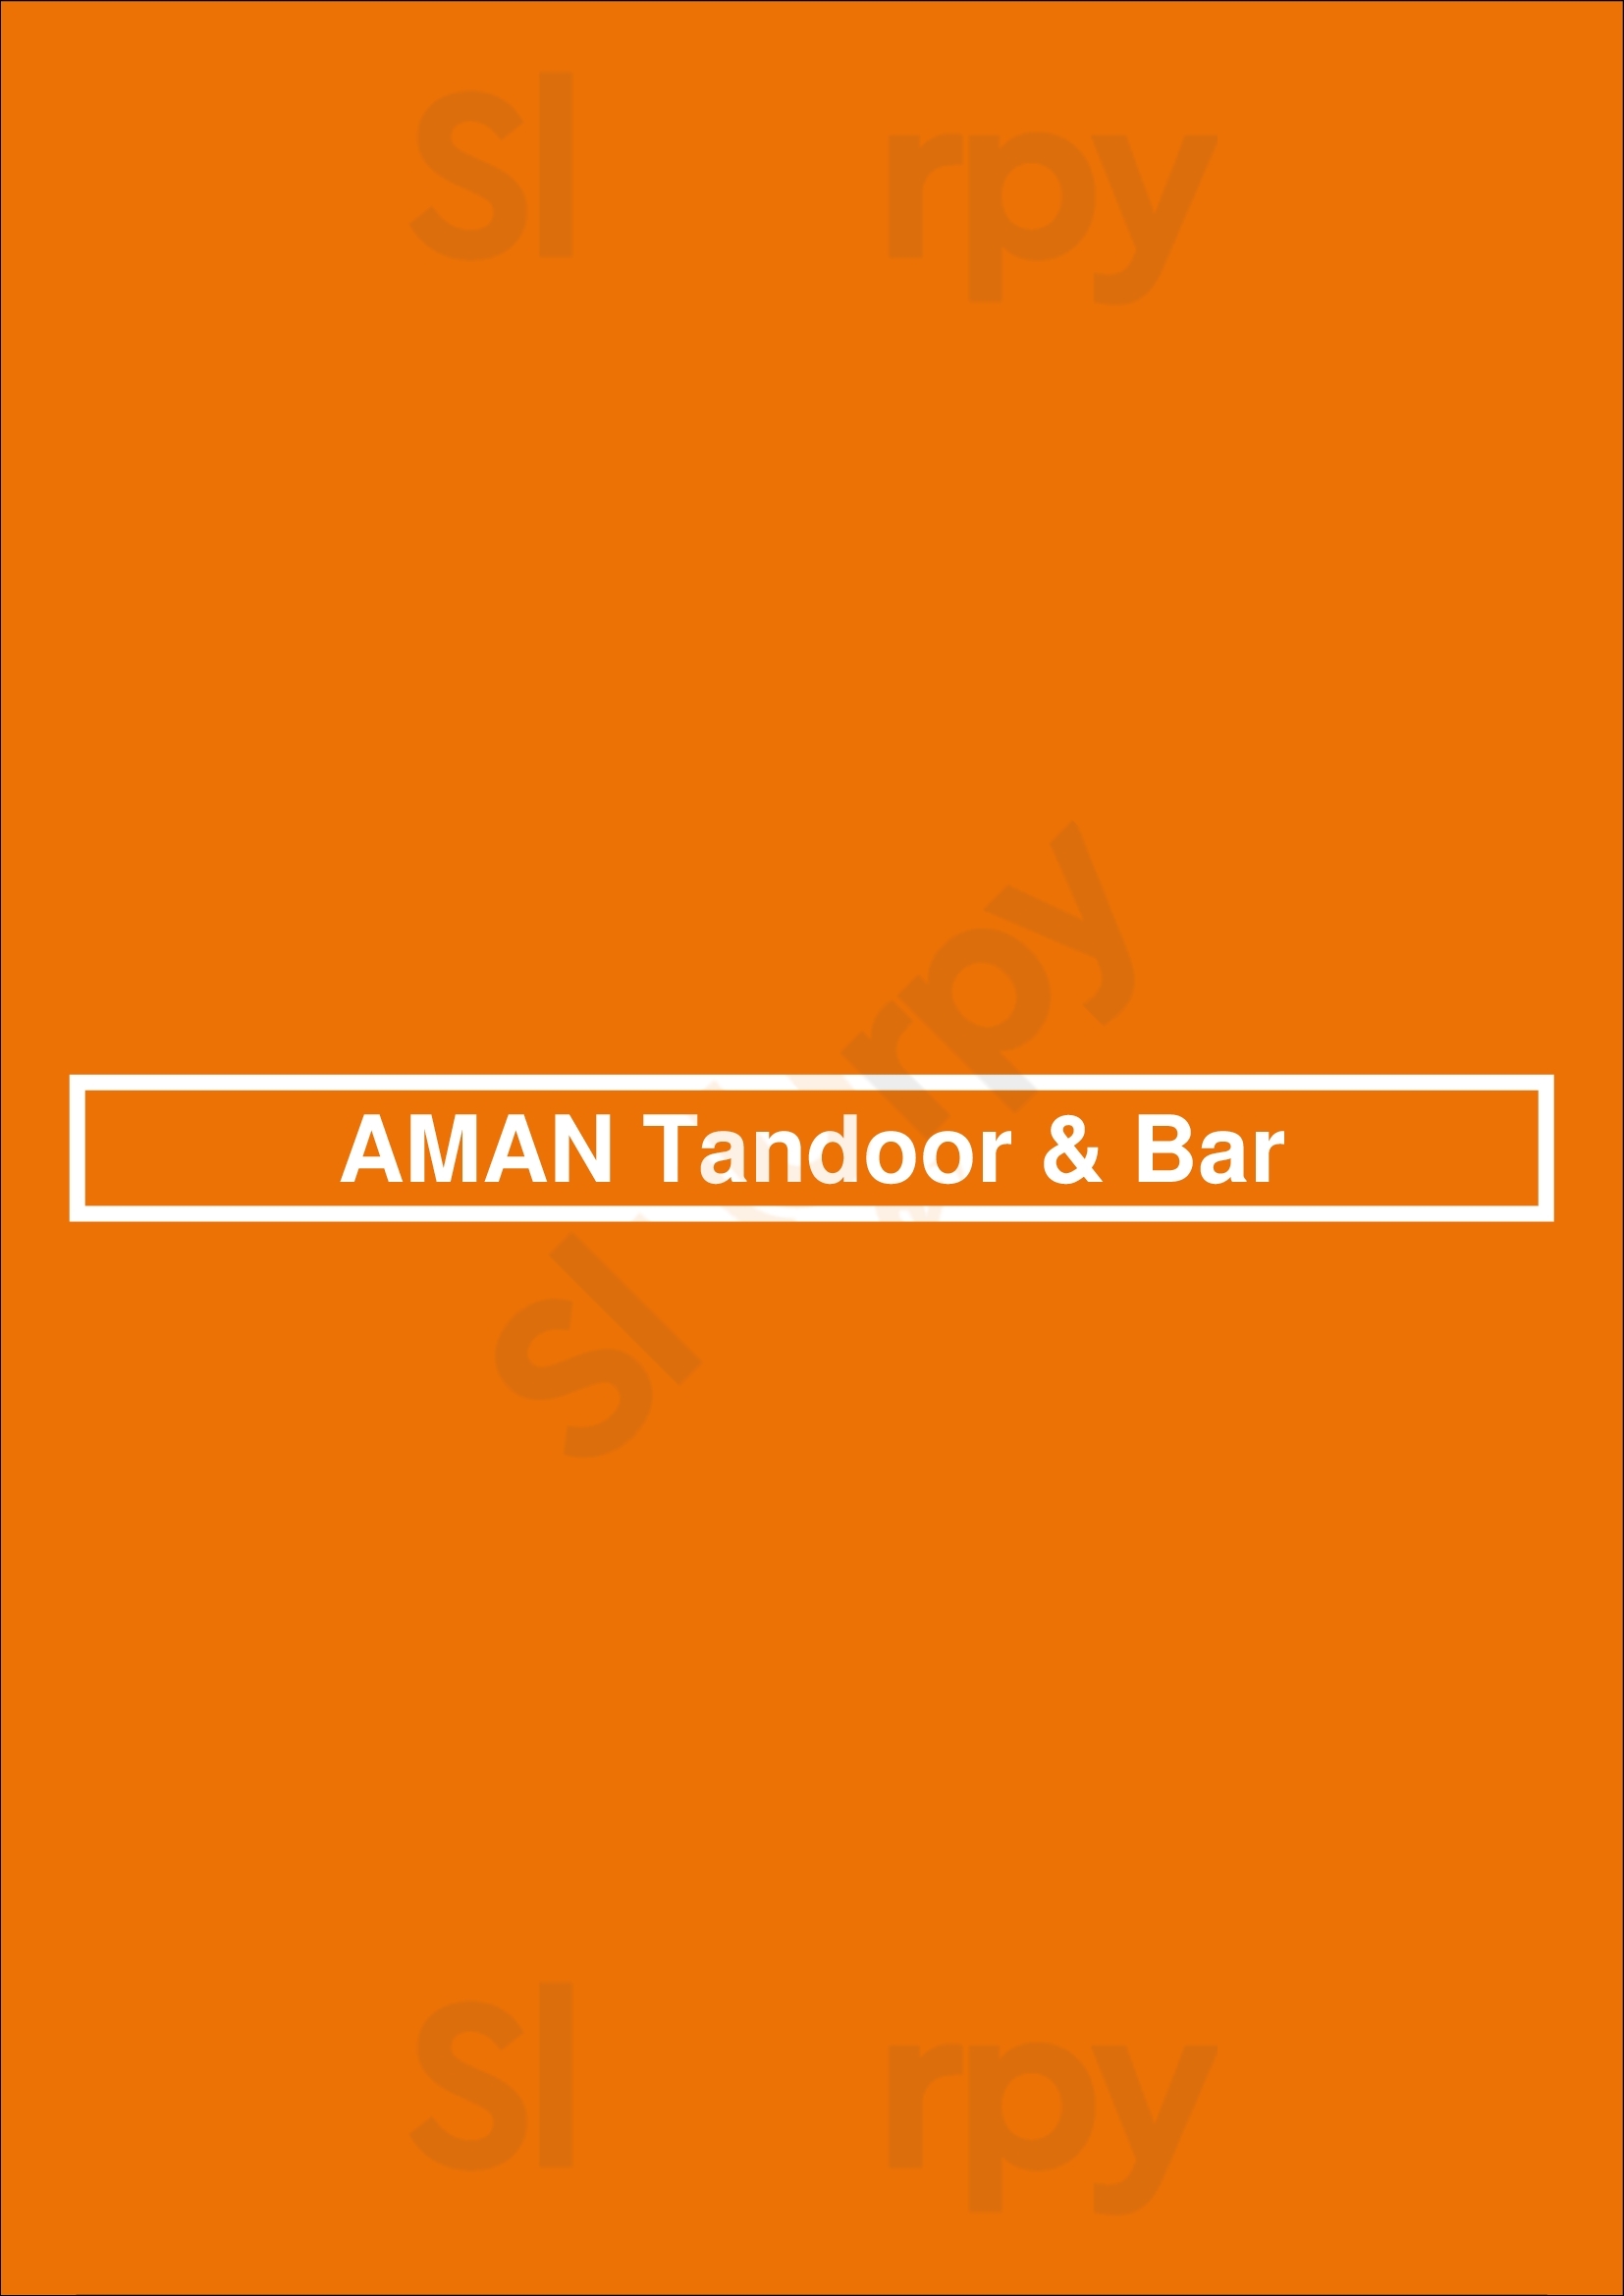 Aman Tandoor & Bar Frankfurt am Main Menu - 1